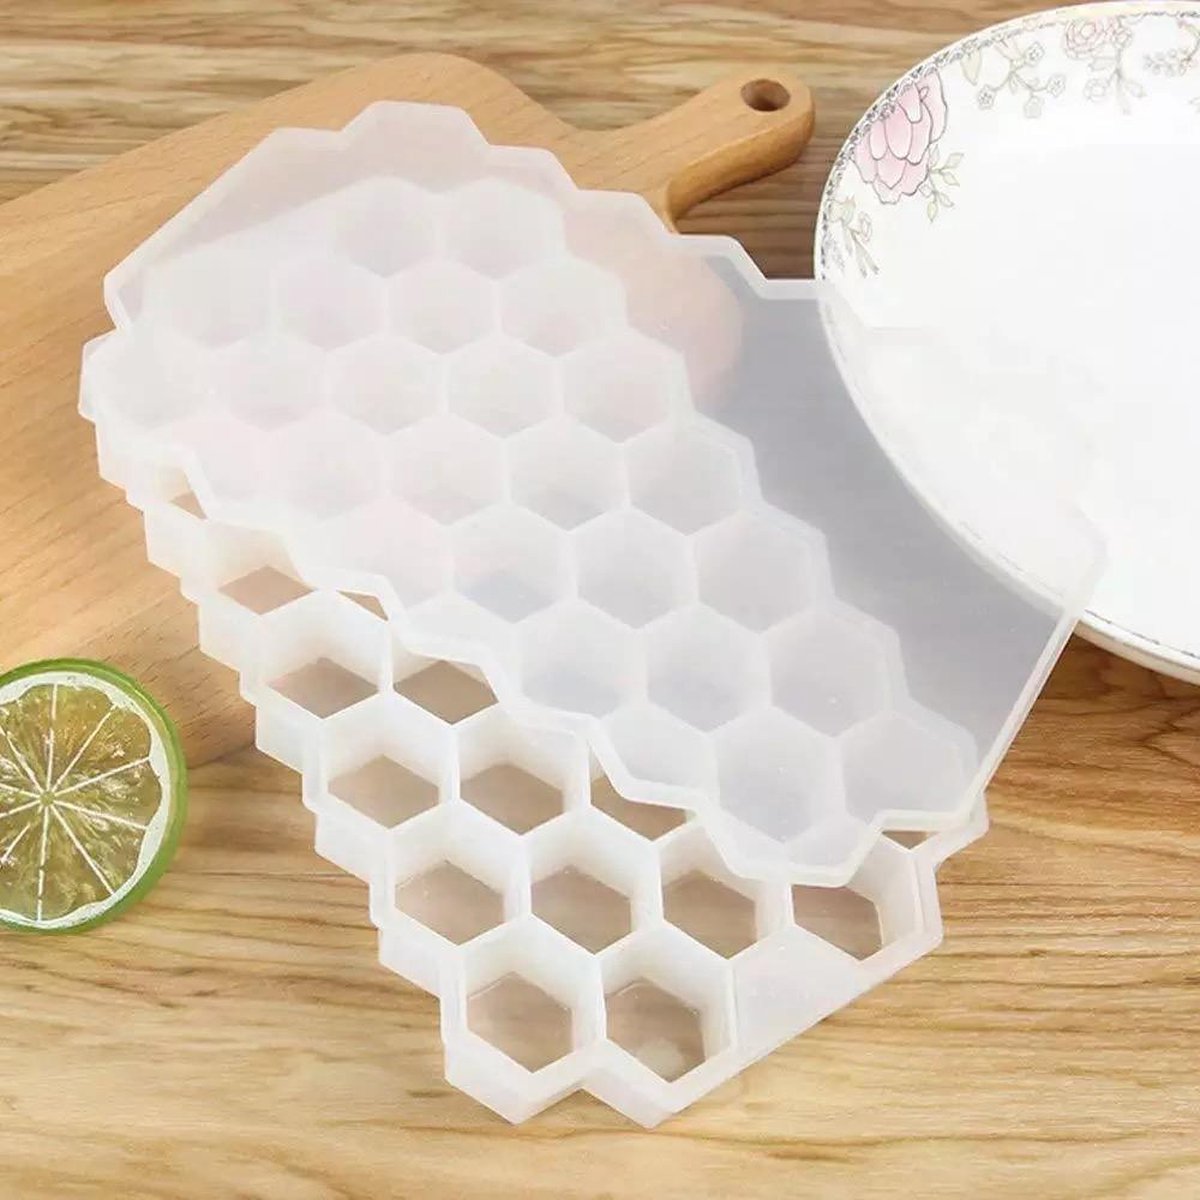 Tigrie Honeycomb Siliconen IJsblokjesvorm Met Deksel | ijsblokjesmakers | Voor 37 ijsblokjes[Transparant]]